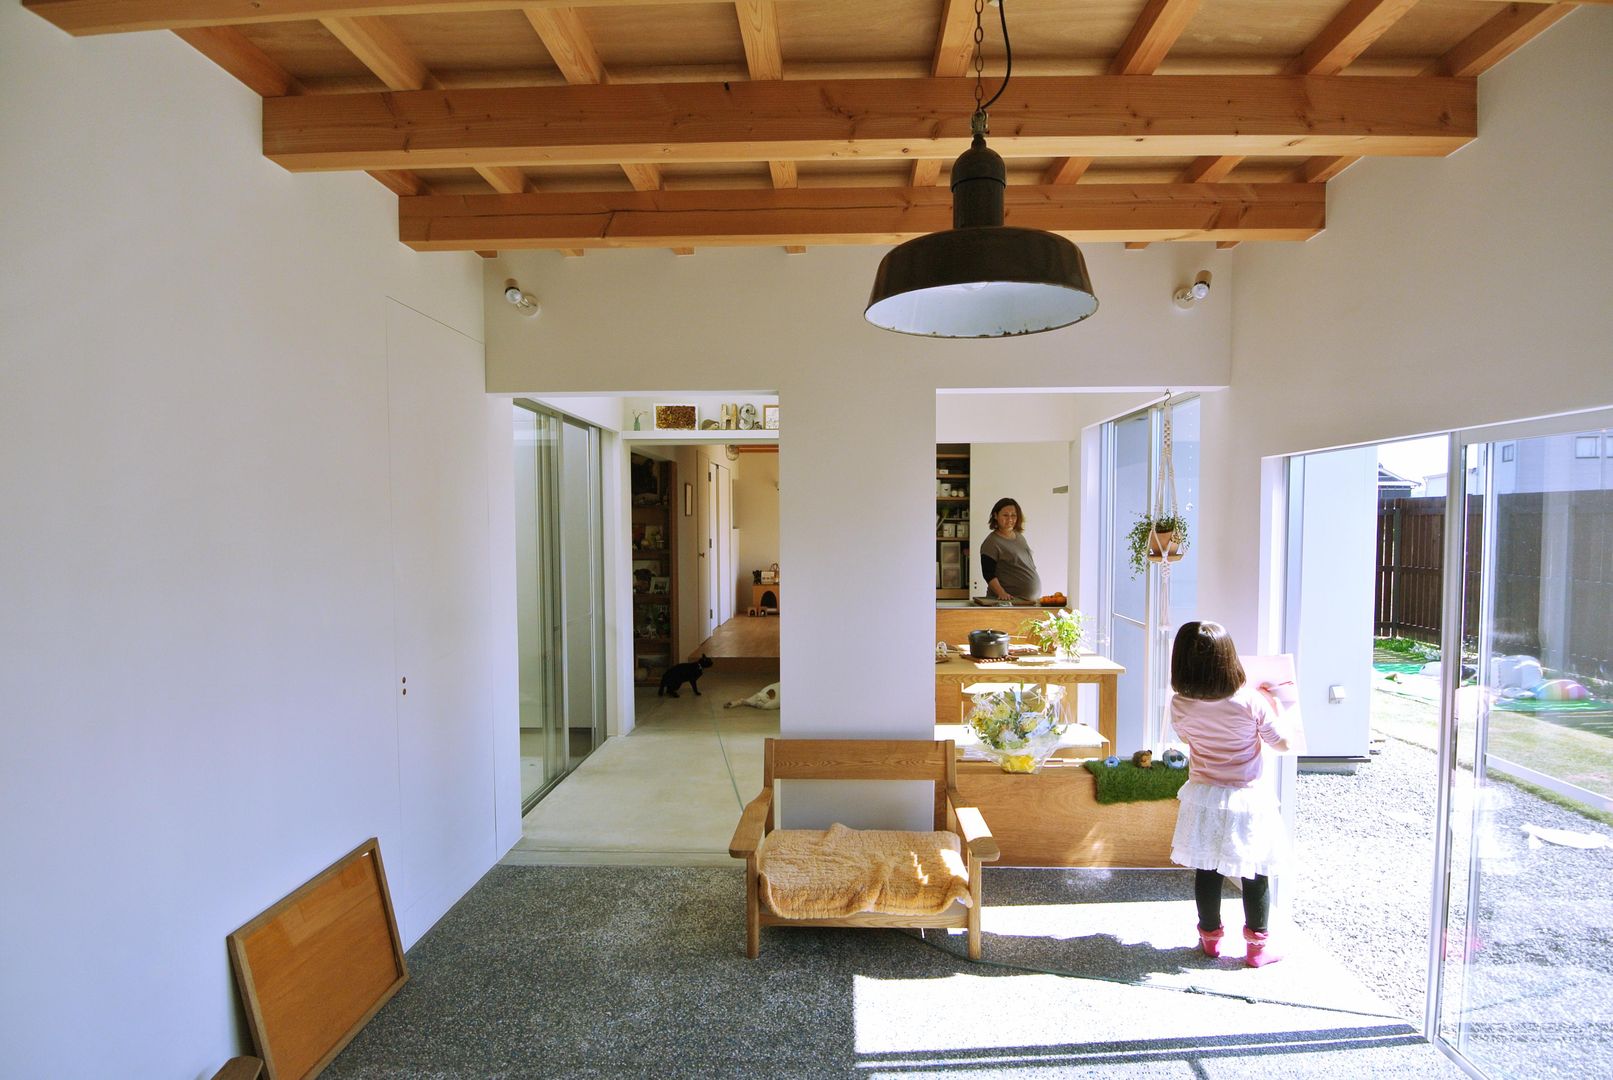 ​House for DONKORO, シキナミカズヤ建築研究所 シキナミカズヤ建築研究所 Livings modernos: Ideas, imágenes y decoración Madera Acabado en madera